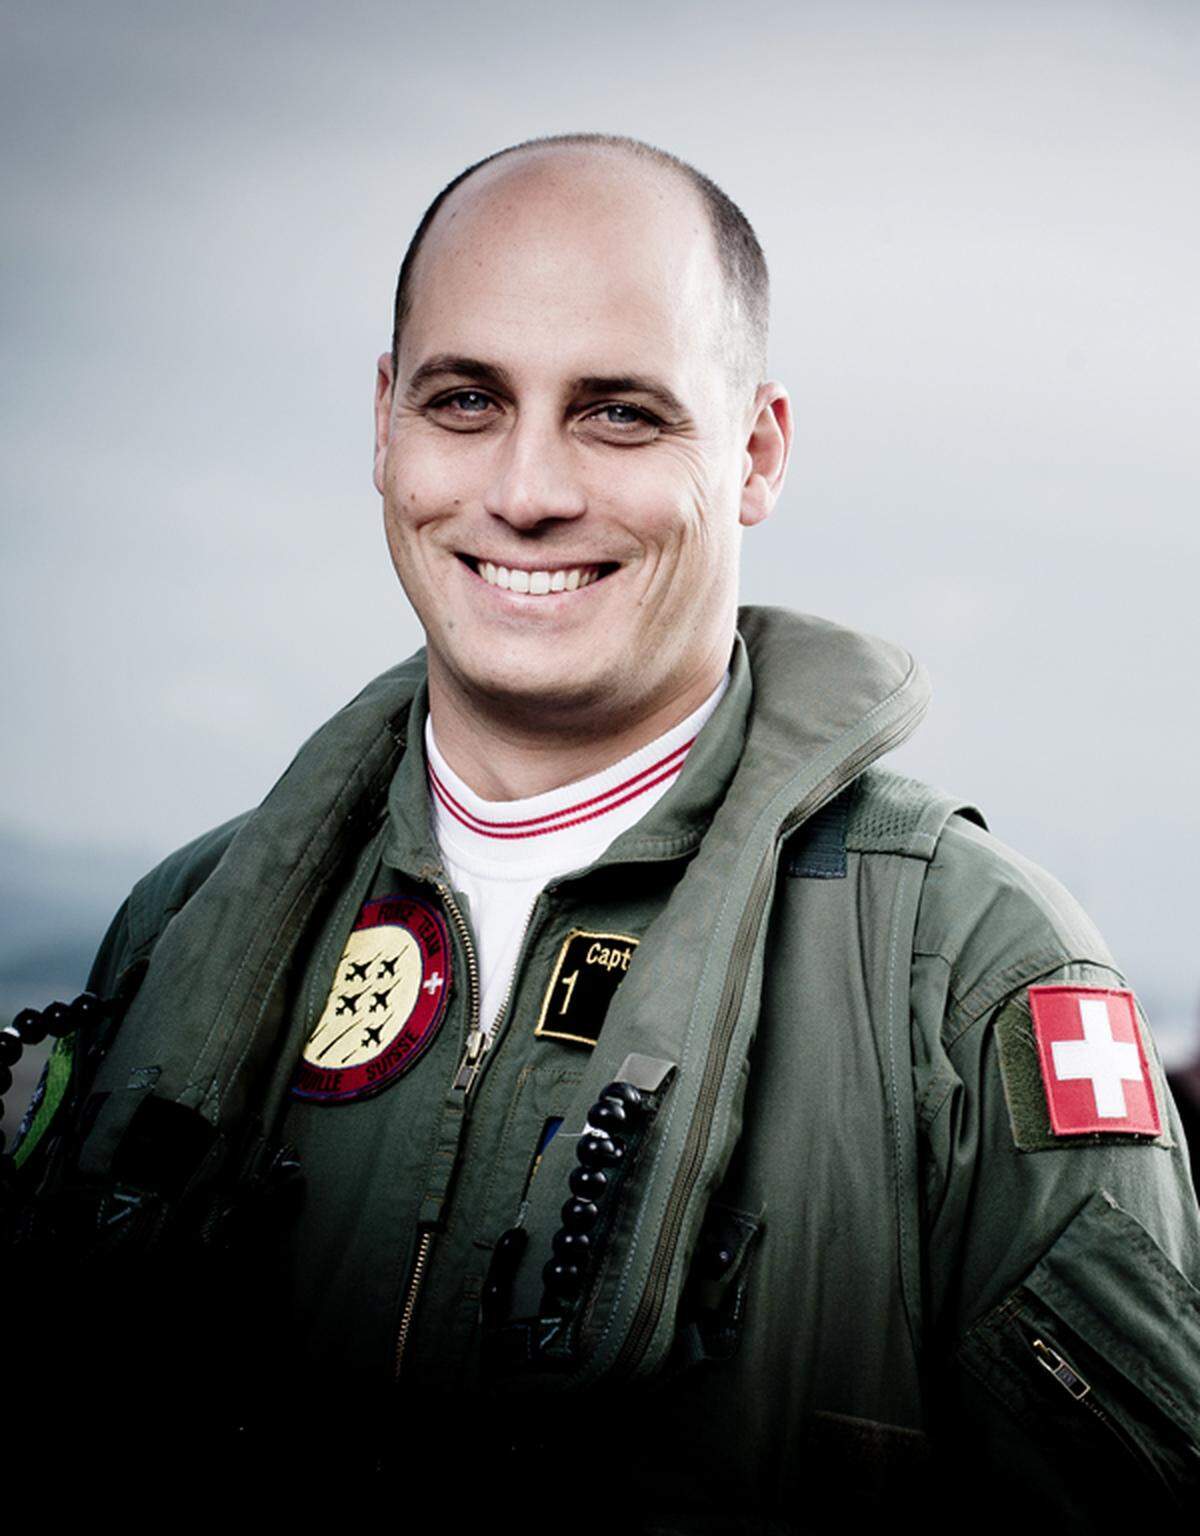 Der Kampfjetpilot Marc Zimmerli schlägt eine thematische Brücke von der Militärfliegerei zur Businesswelt. Thema seines Vortrags um 14:30 ist "Teamwork bei Tempo 1000". Es geht dabei um Leadership, Vertrauen, Zuverlässigkeit und Präzision.